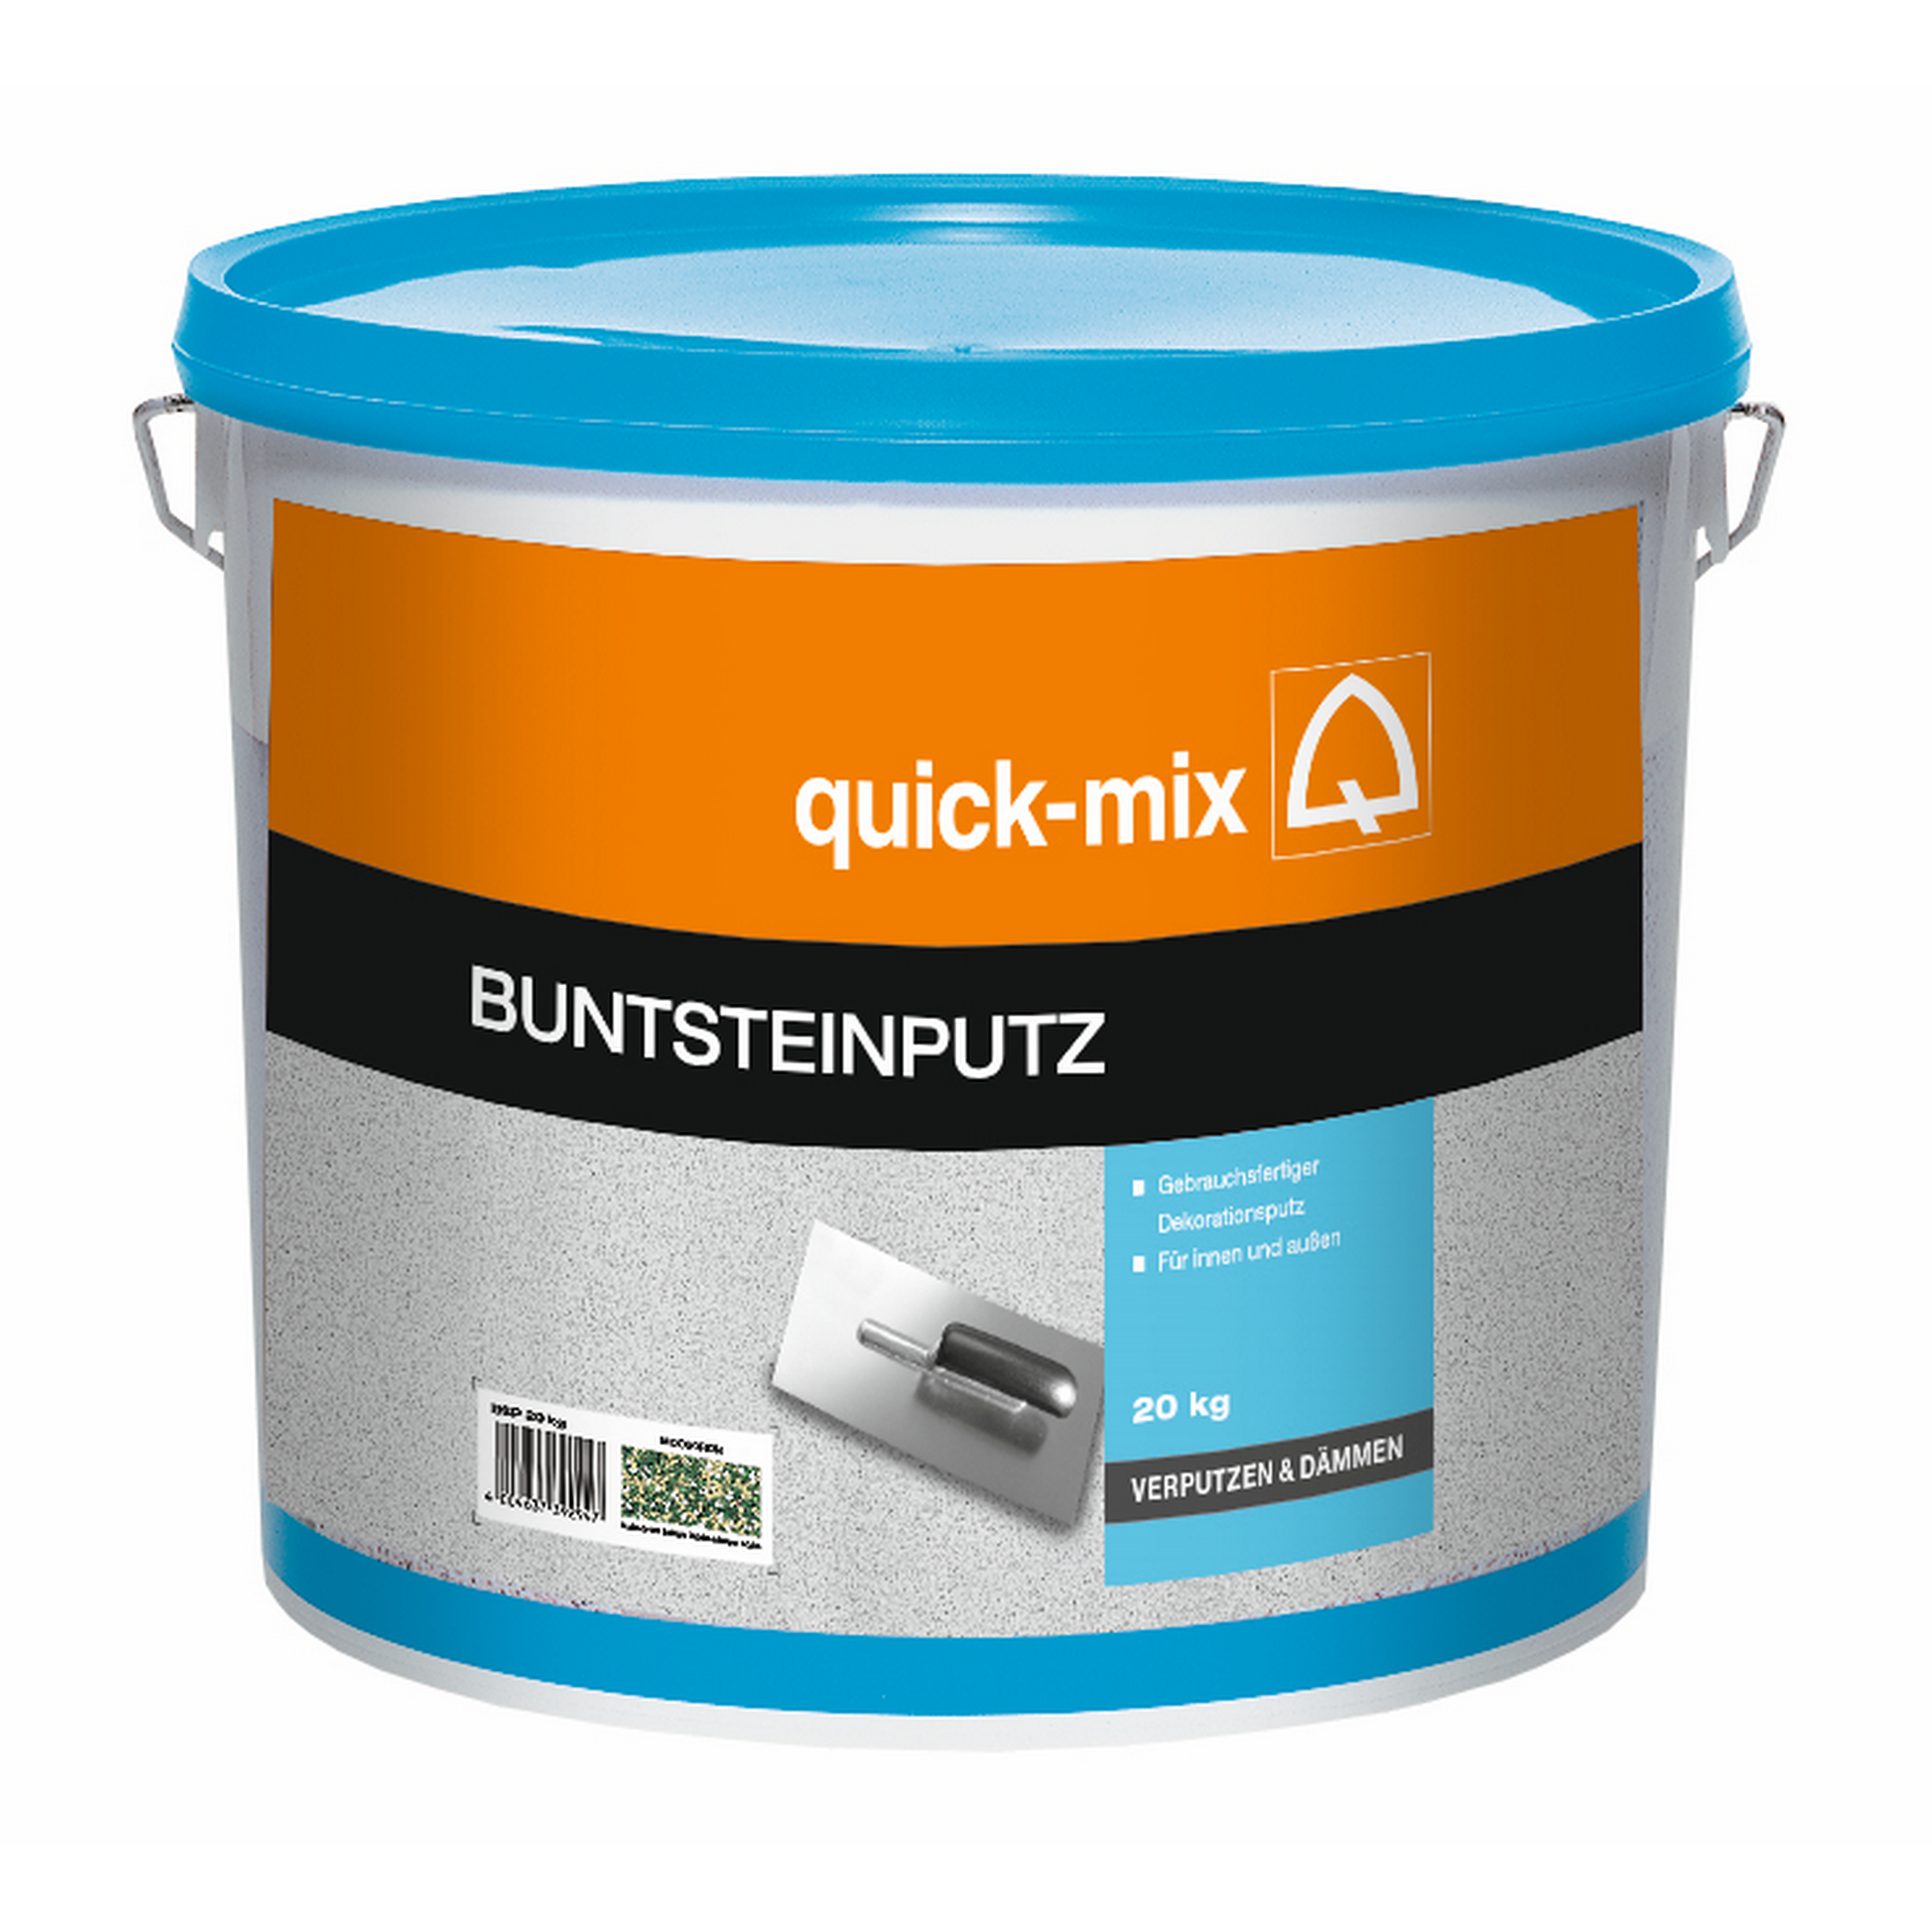 Buntsteinputz 20 kg + product picture